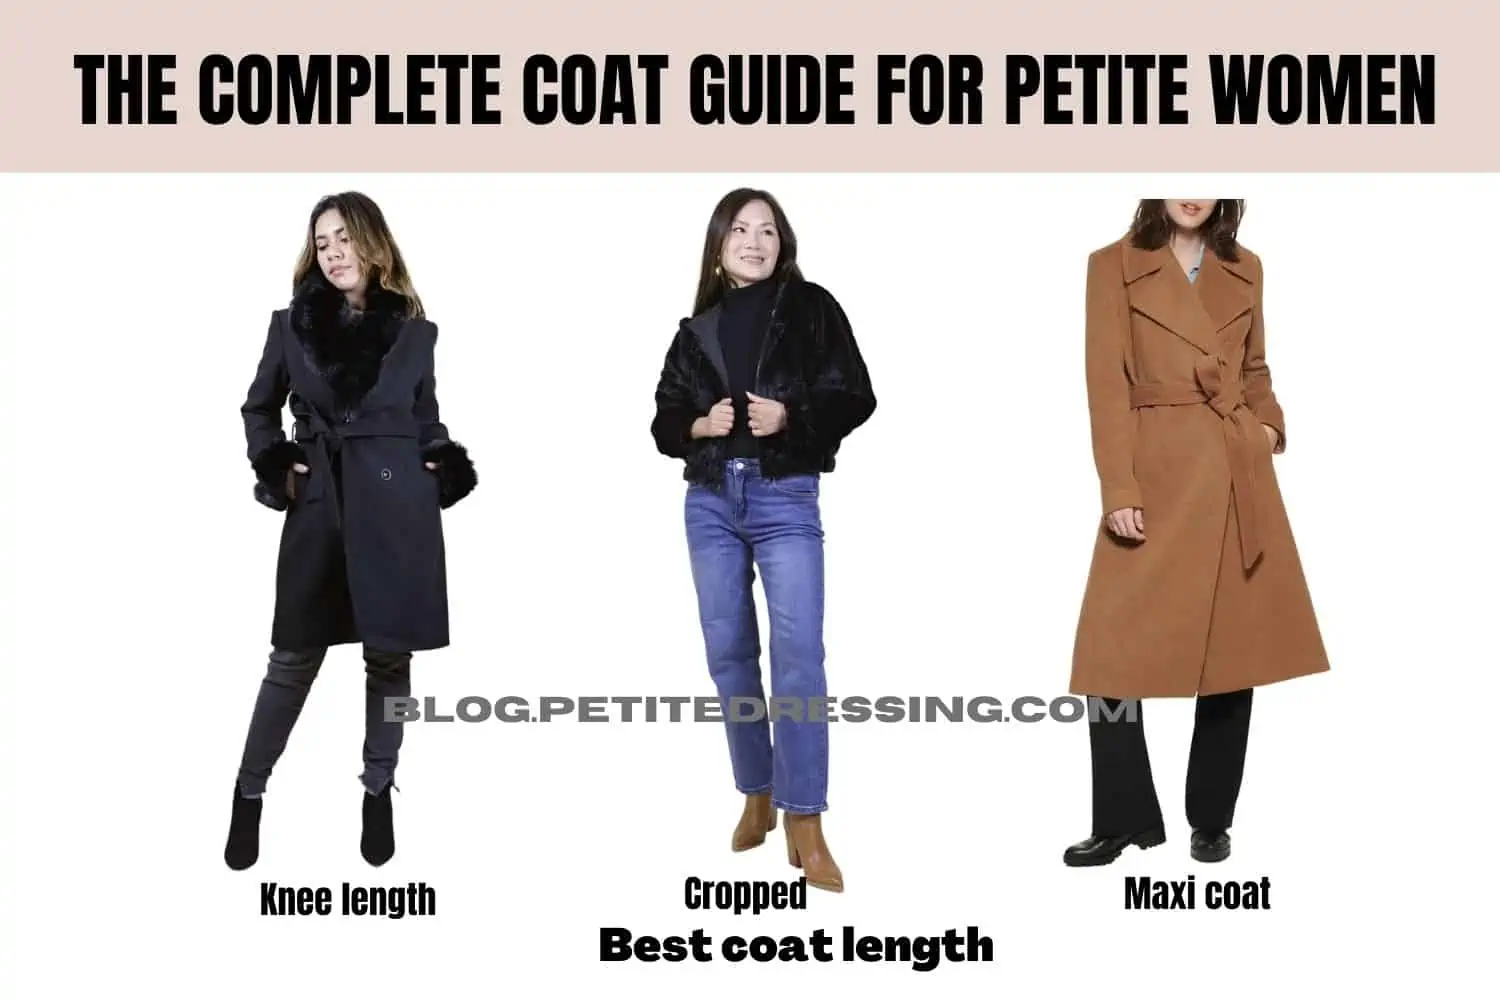 11 Best Winter Coats for Short Women 2022 - PureWow